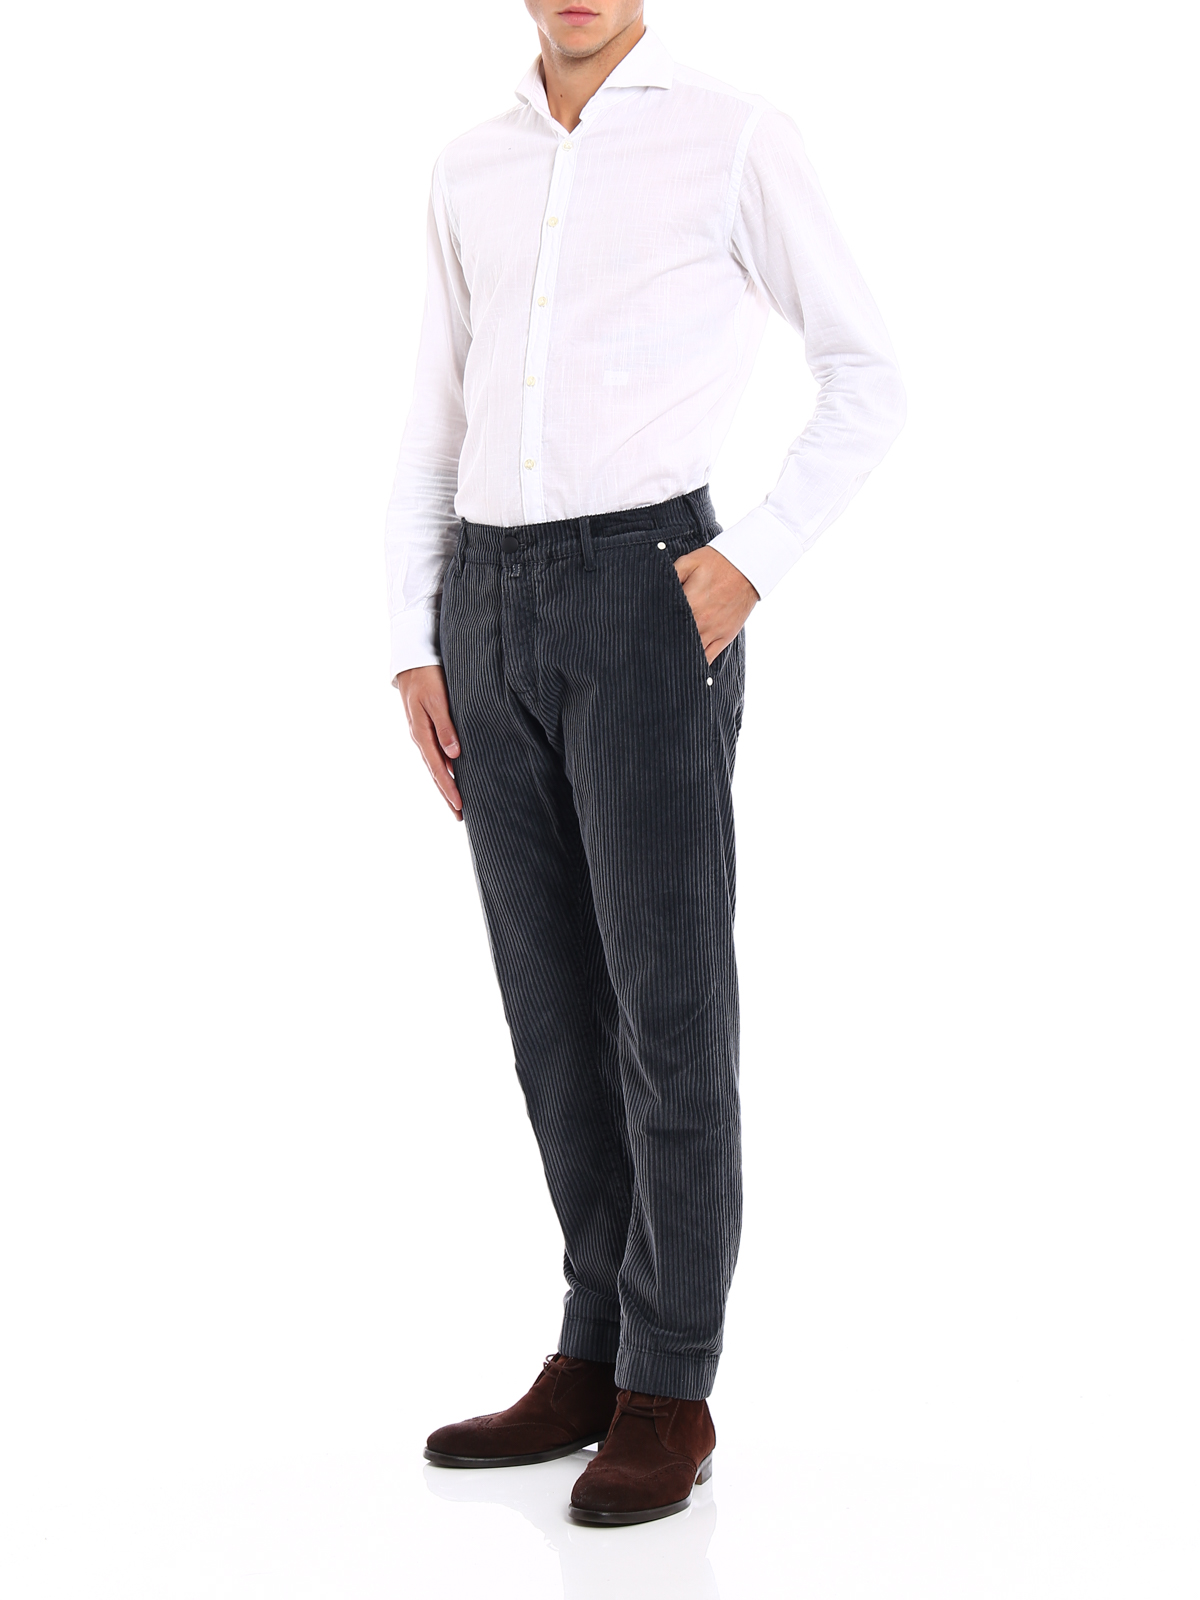 ESPRIT - Mid-Rise Slim Corduroy Trousers at our online shop